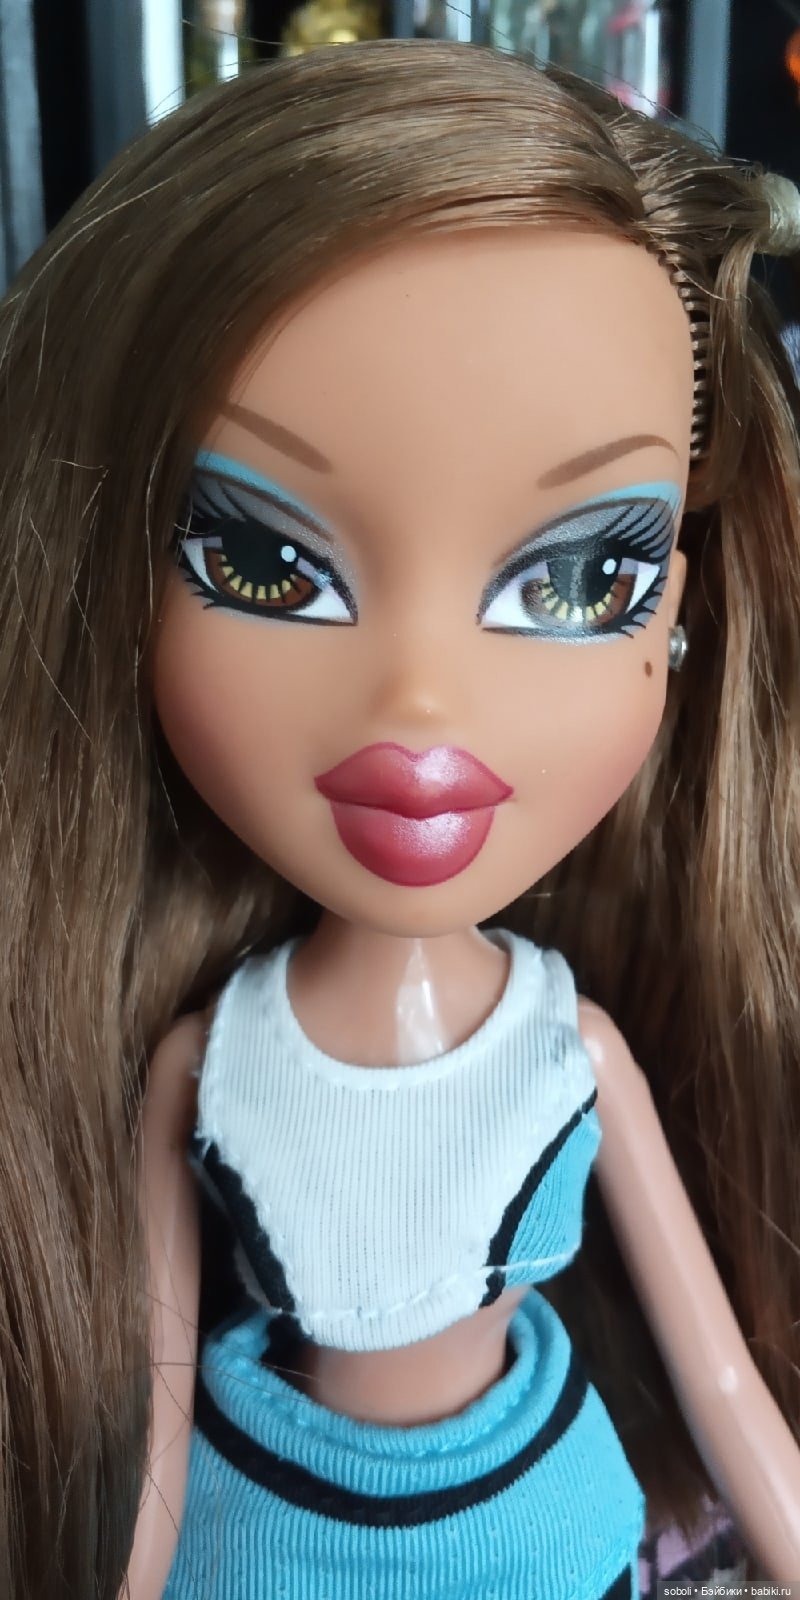 Кукла Братц Bratz Jade Hot Summer Dayz купить в Москве, Личные вещи